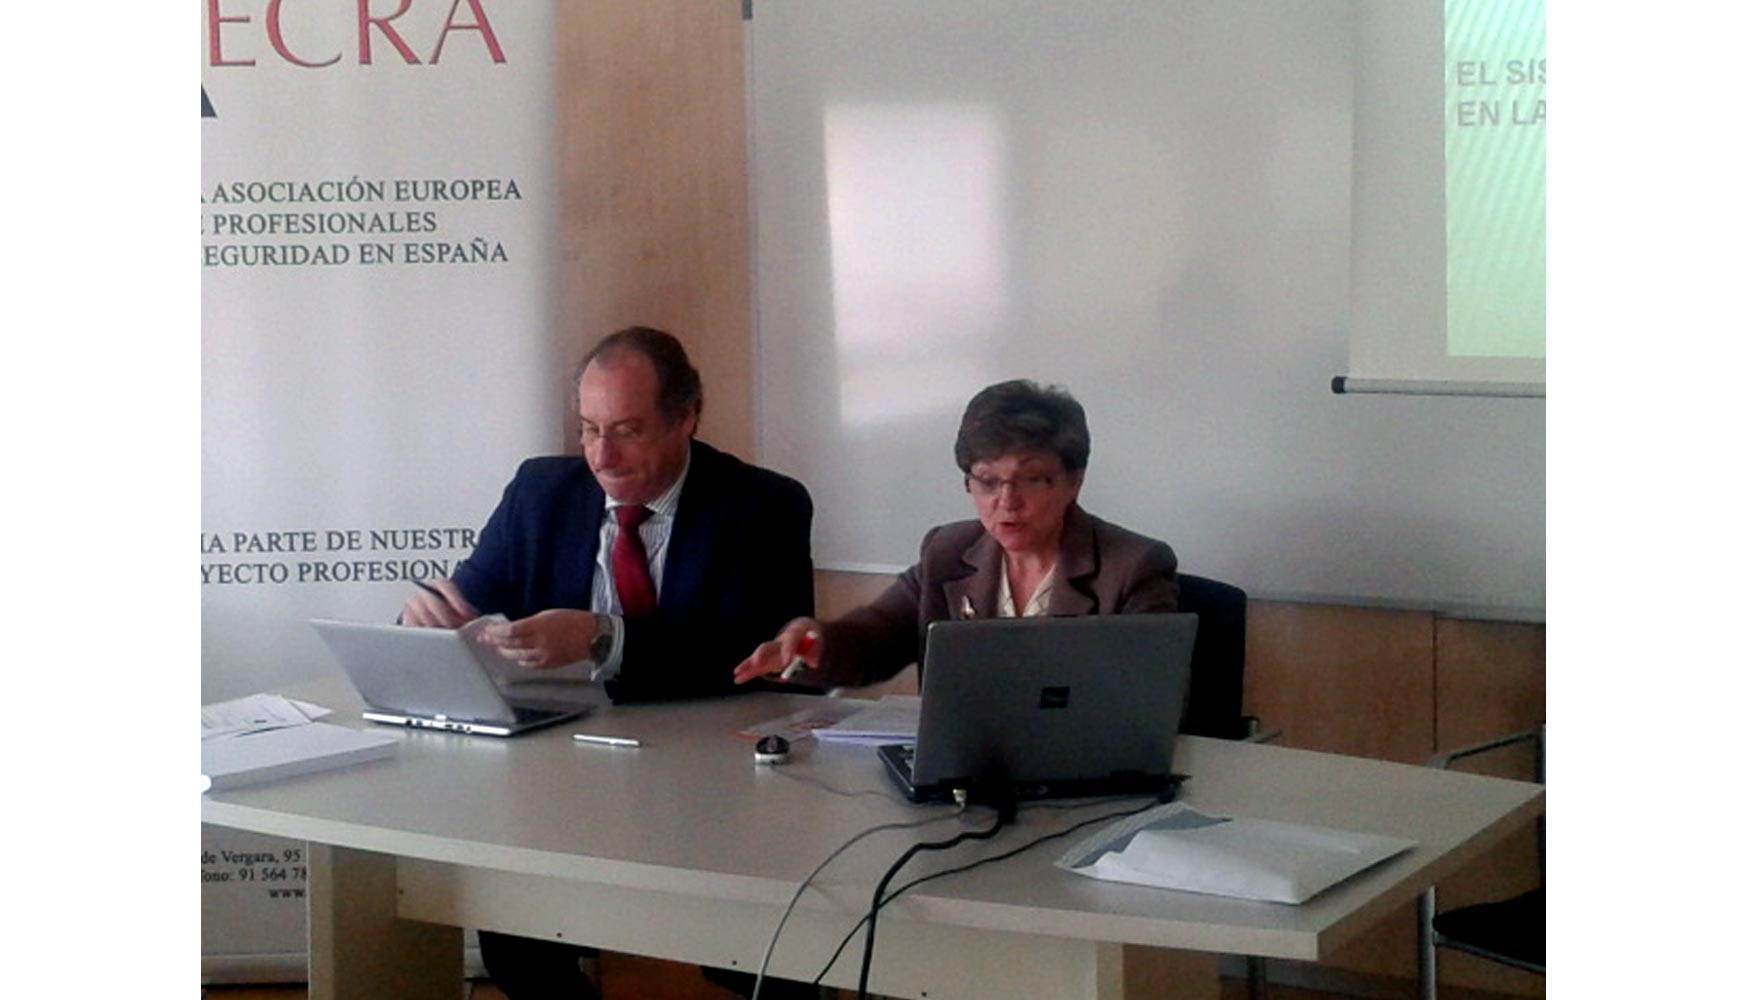 Carmen Martn Villa, secretaria general del Instituto Regional de Arbitraje de Consumo, e Ignacio Carrasco Sayalero, secretario general de Aecra...